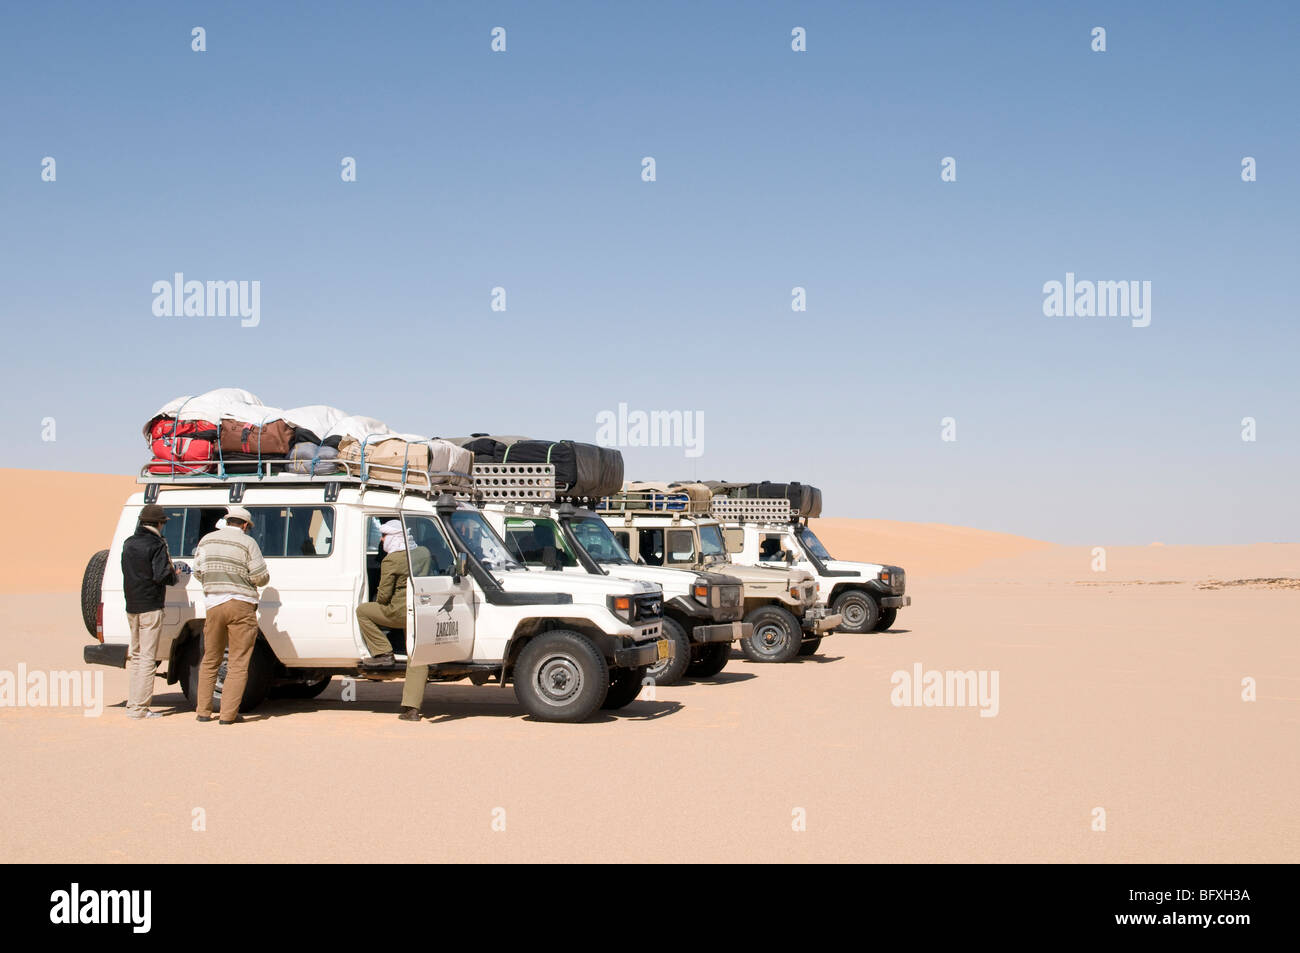 Ein Konvoi der Sahara Wüstensafari 4x4 Jeeps am Rande des Großen Sandmeers tief in der Westsahara-Region Ägyptens. Stockfoto